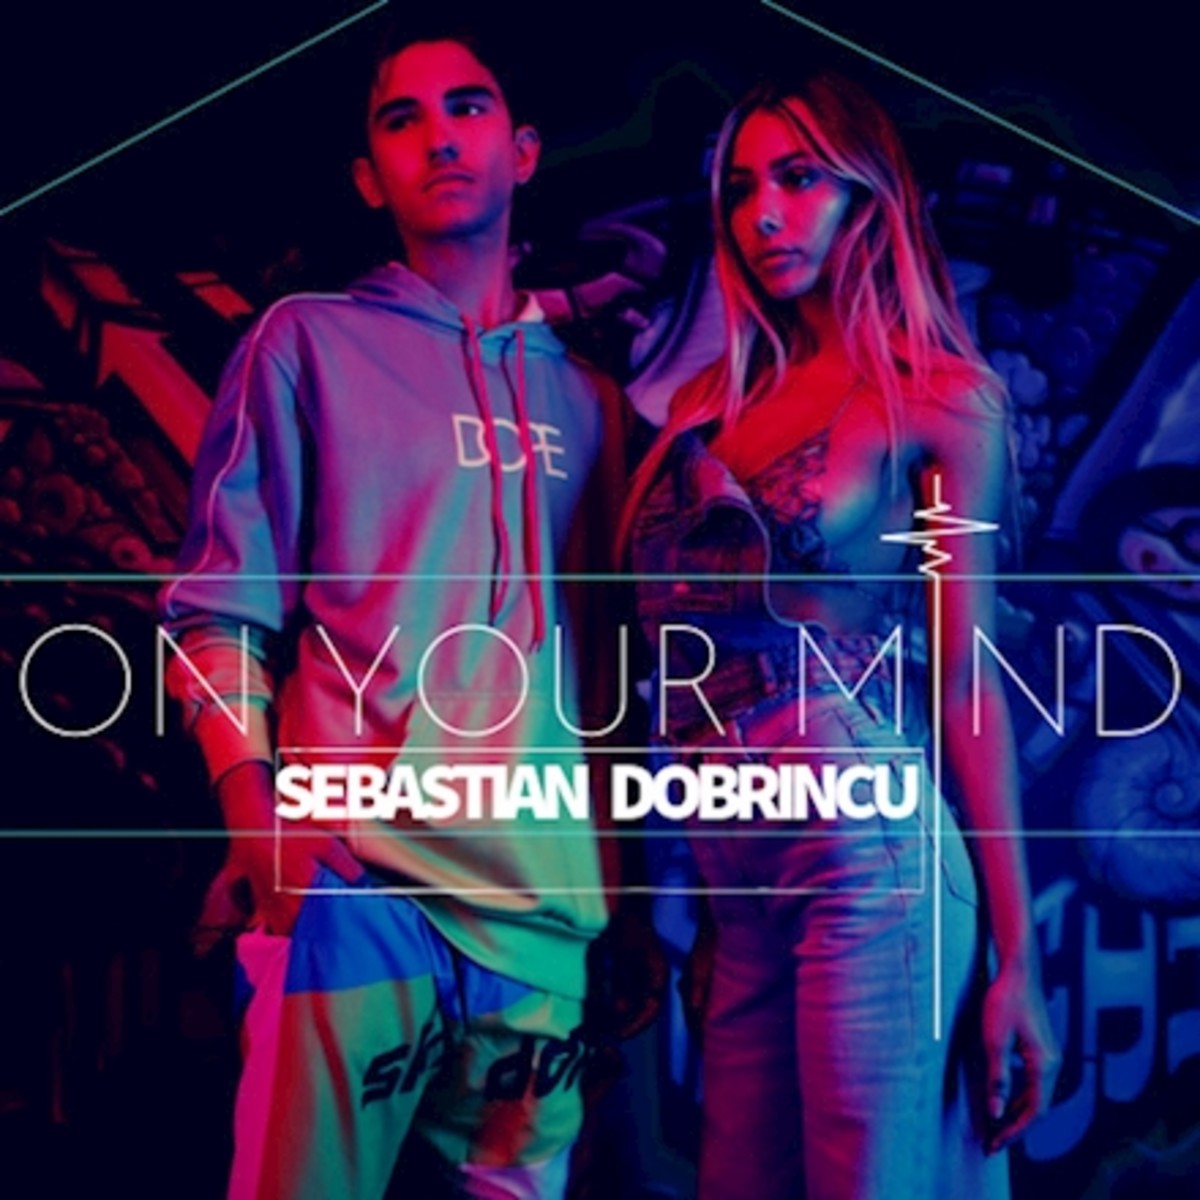 Sebastian Dobrincu - On Your Mind (ALBUM ARTWORK)